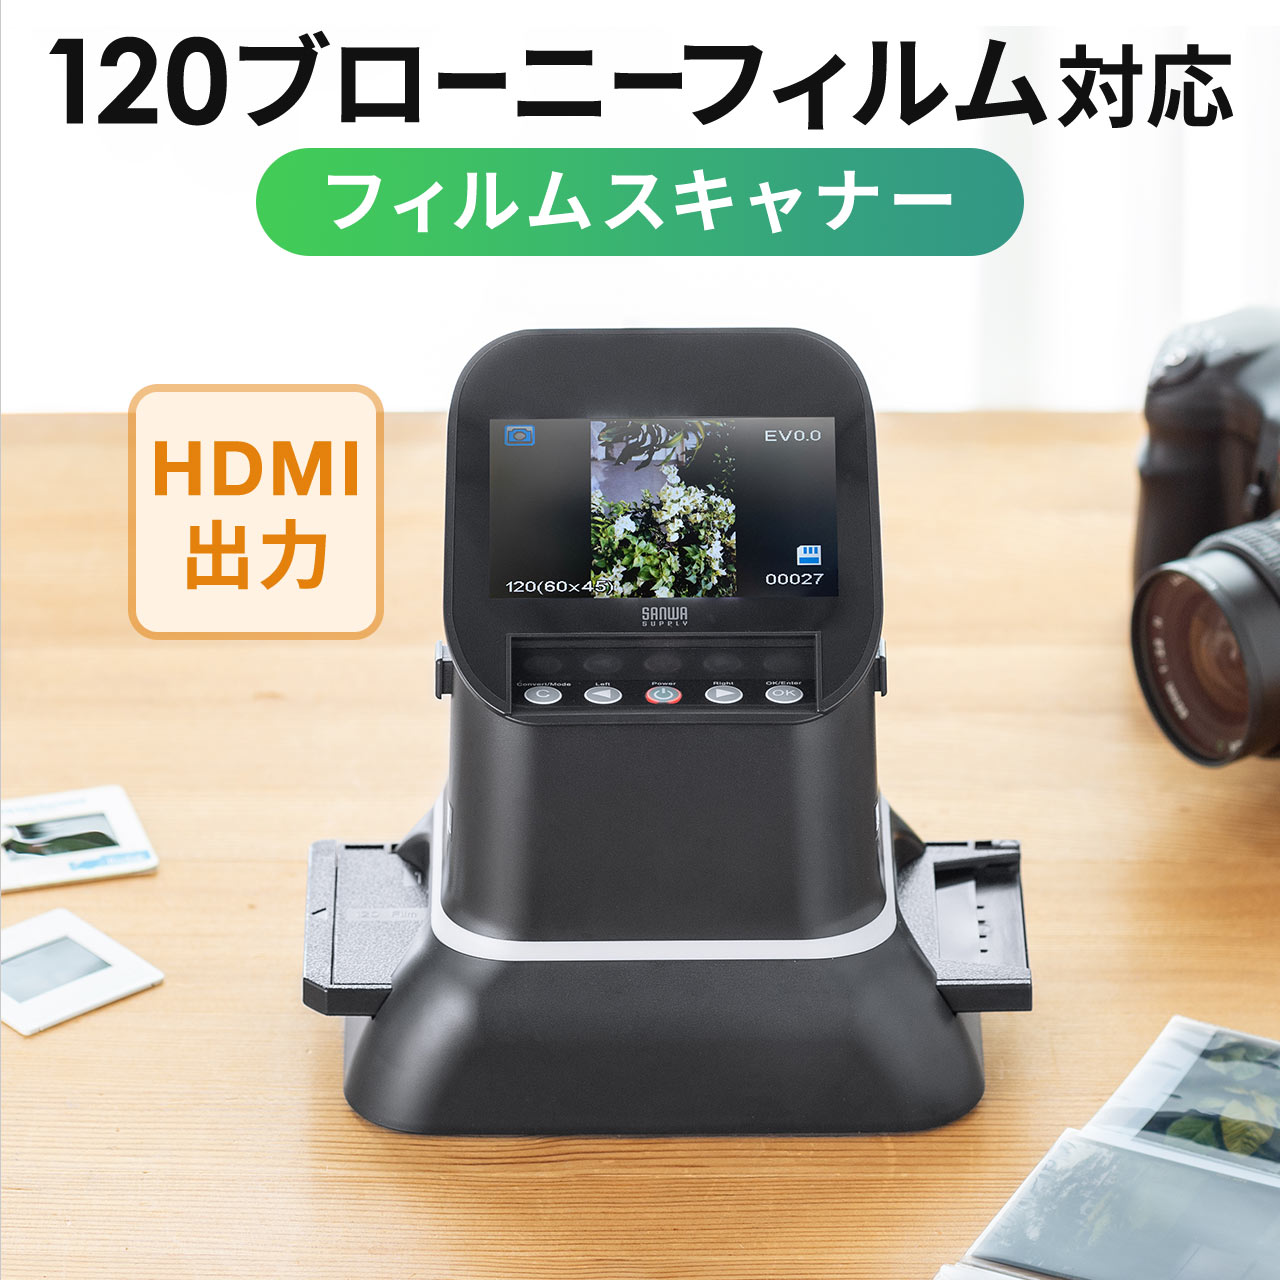  плёнка сканер фотография сканер скан 120 Brawny плёнка высокое разрешение высота разрешение negapoji плёнка цифровой .HDMI мощность телевизор мощность соответствует 400-SCN065